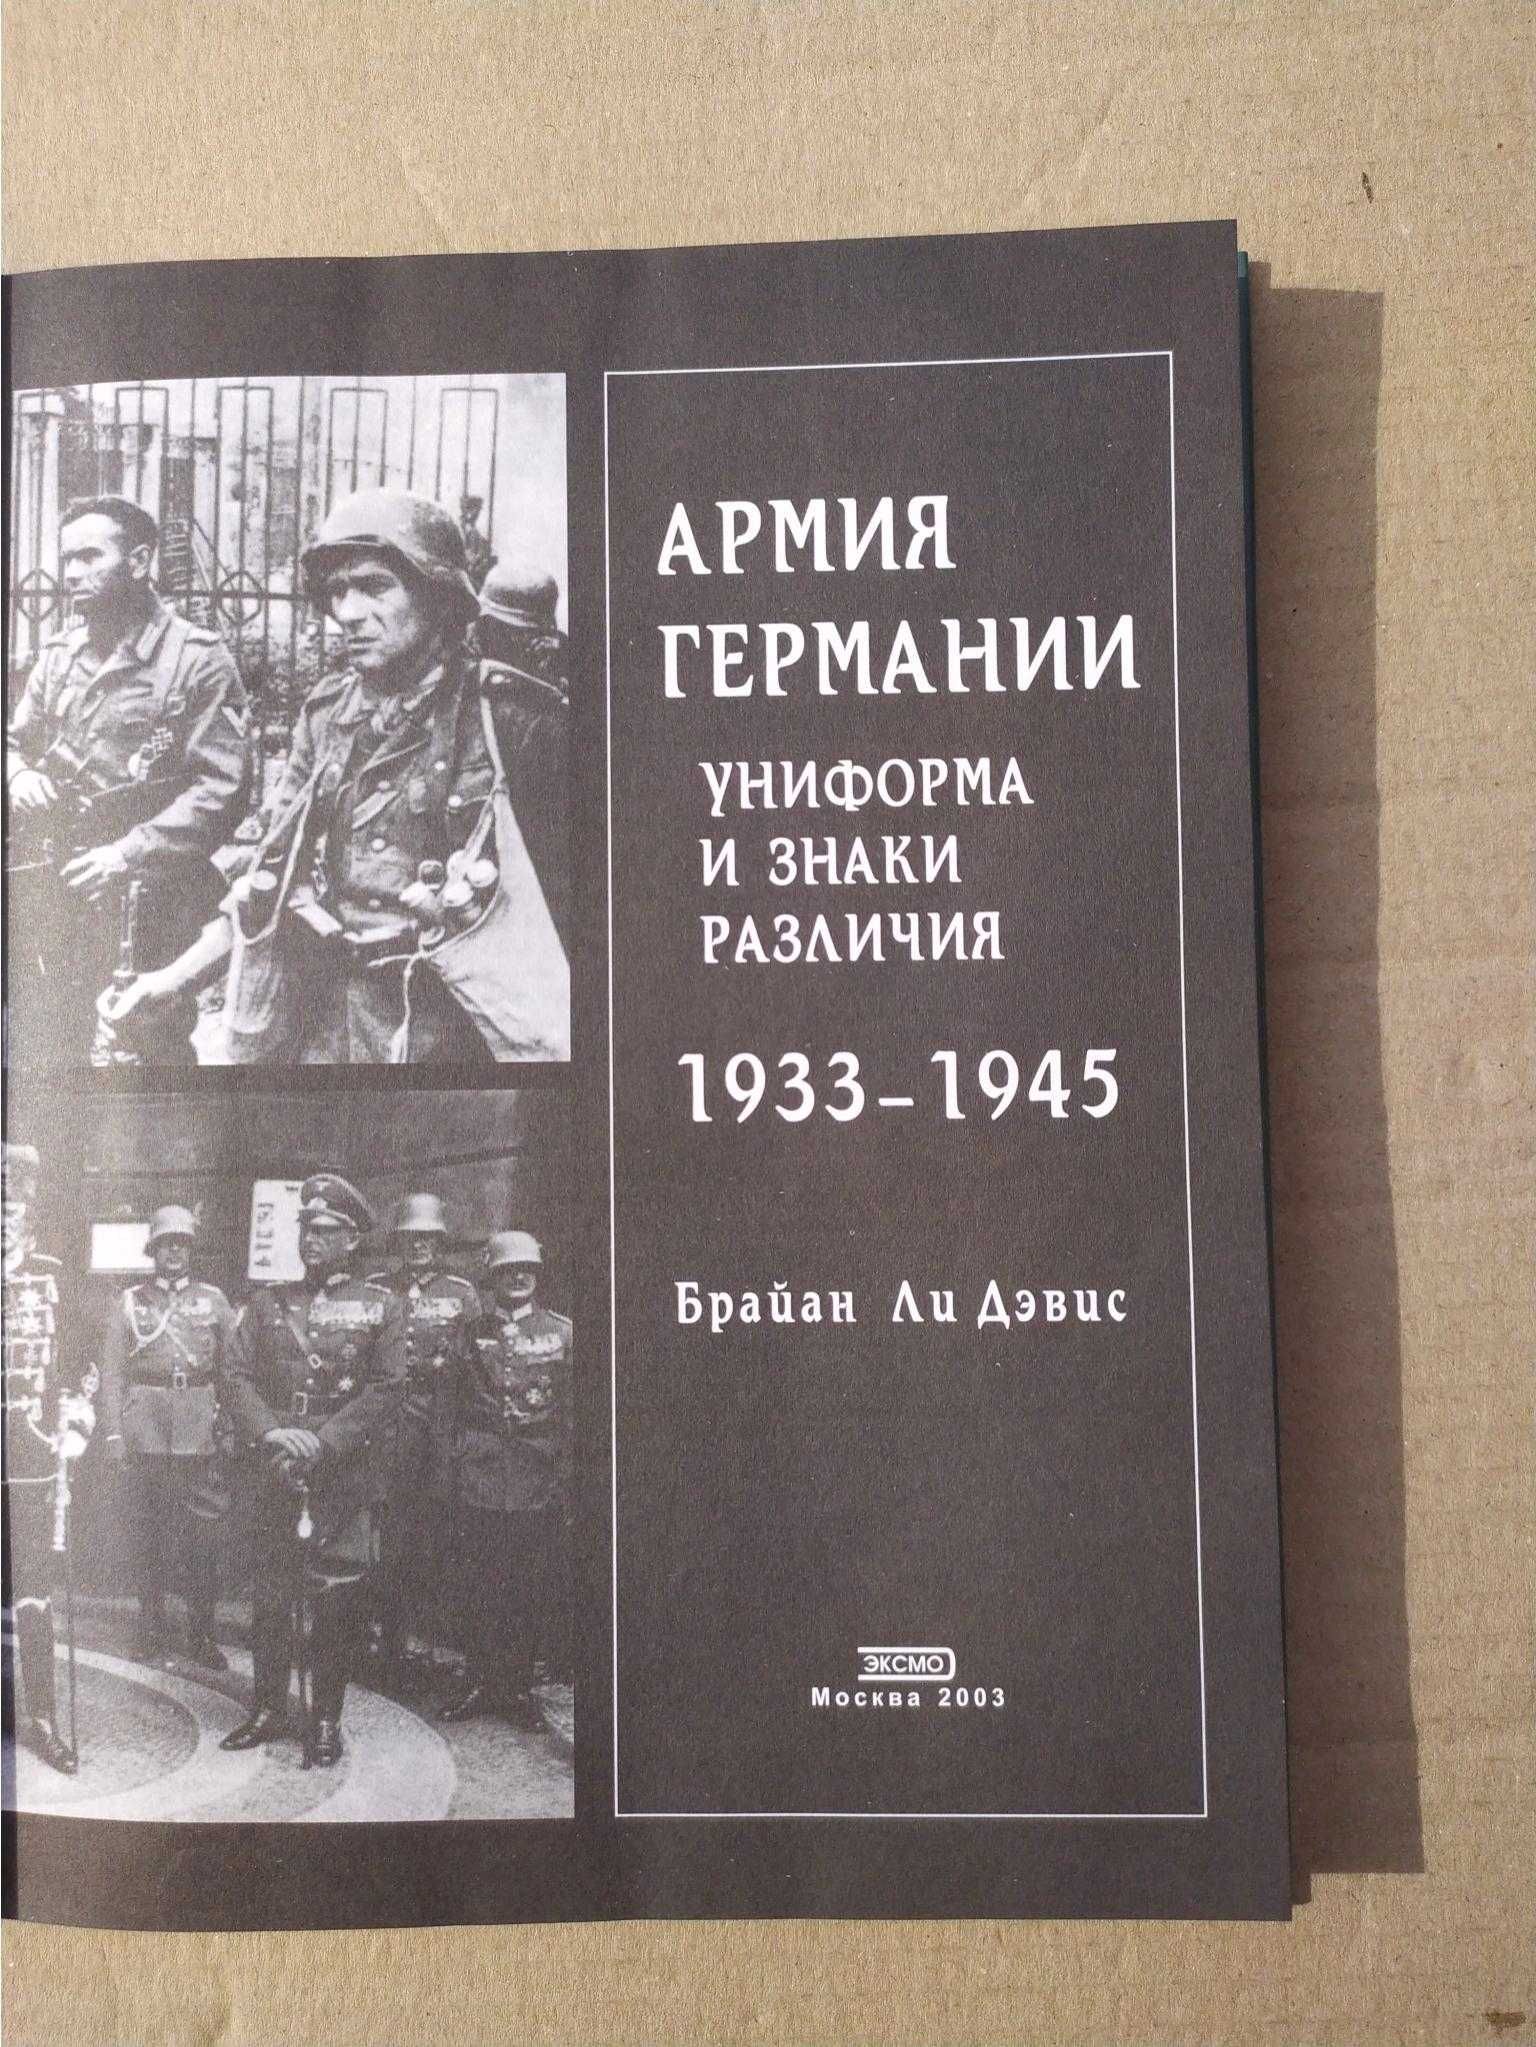 Дэвис Брайан Ли Армия Германии Униформа и знаки различия 1933-1945